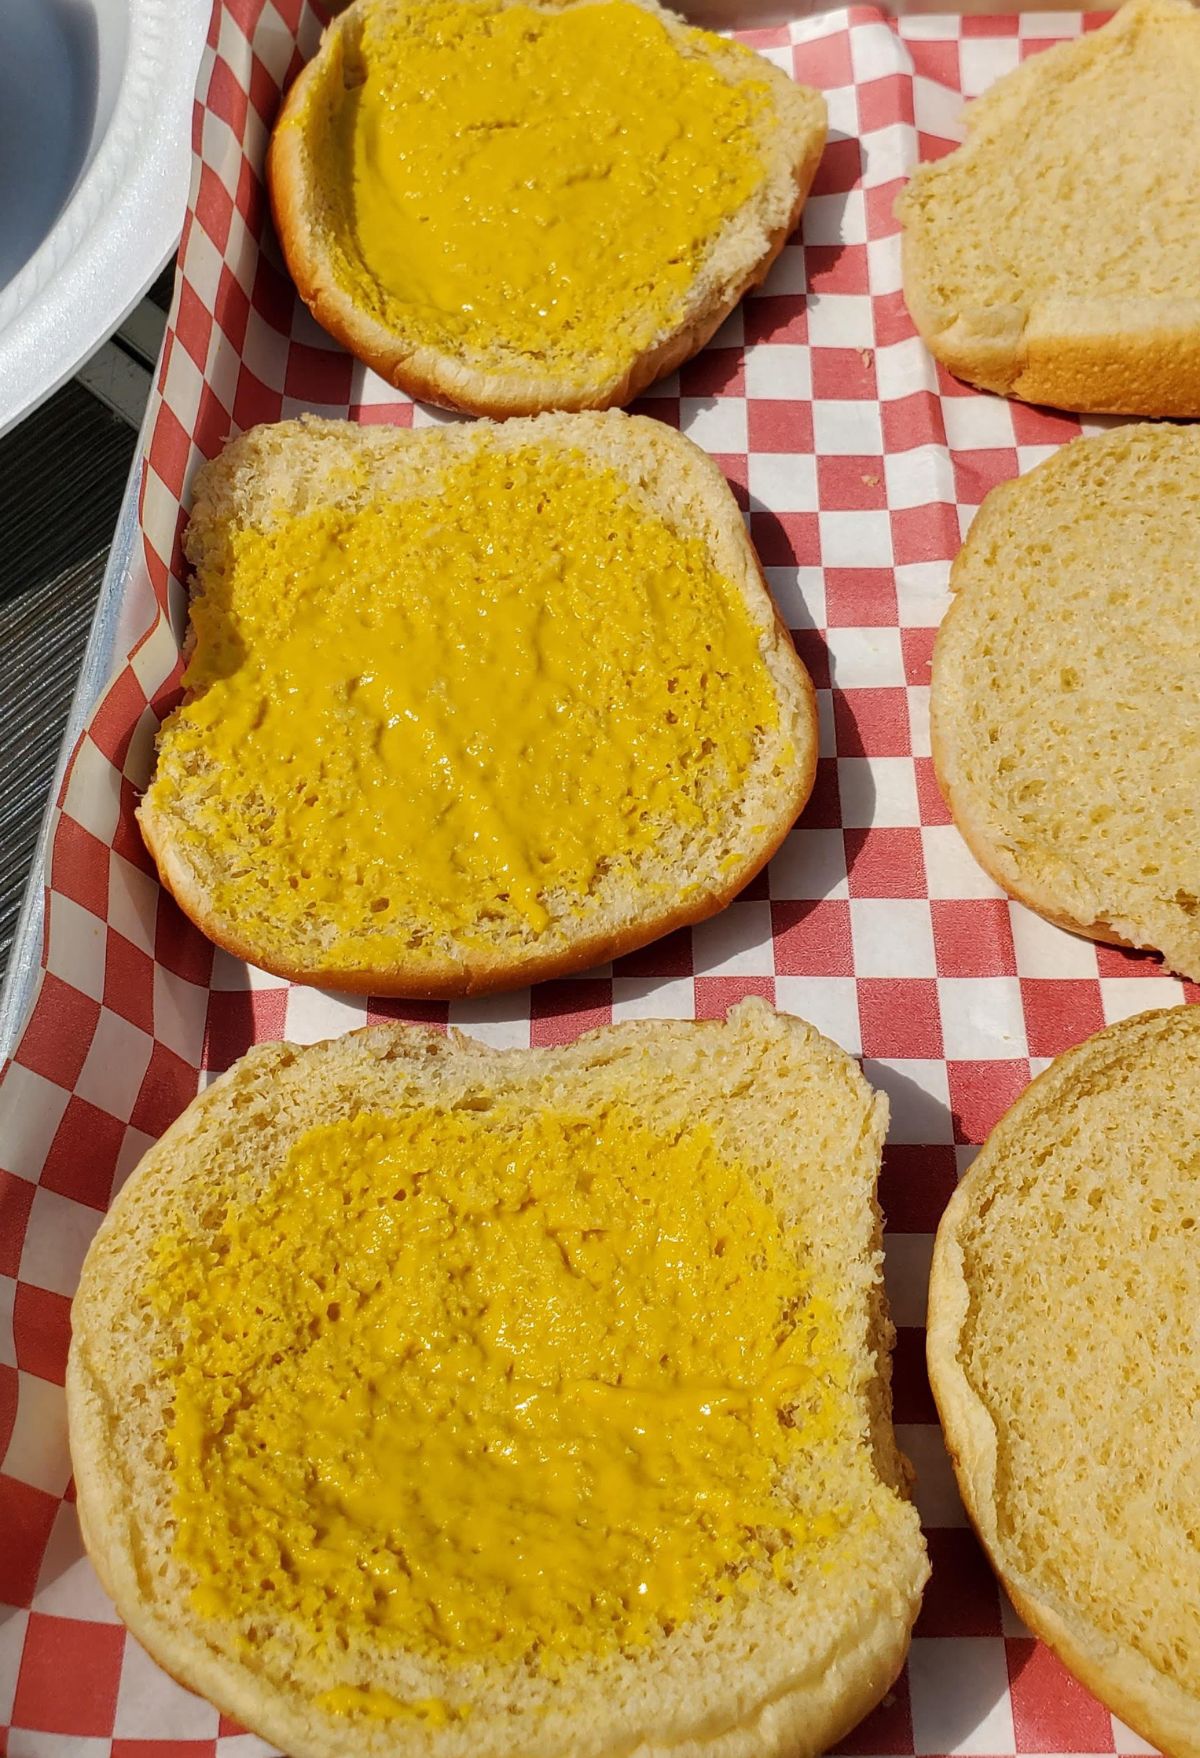 mustard on hamburger bun